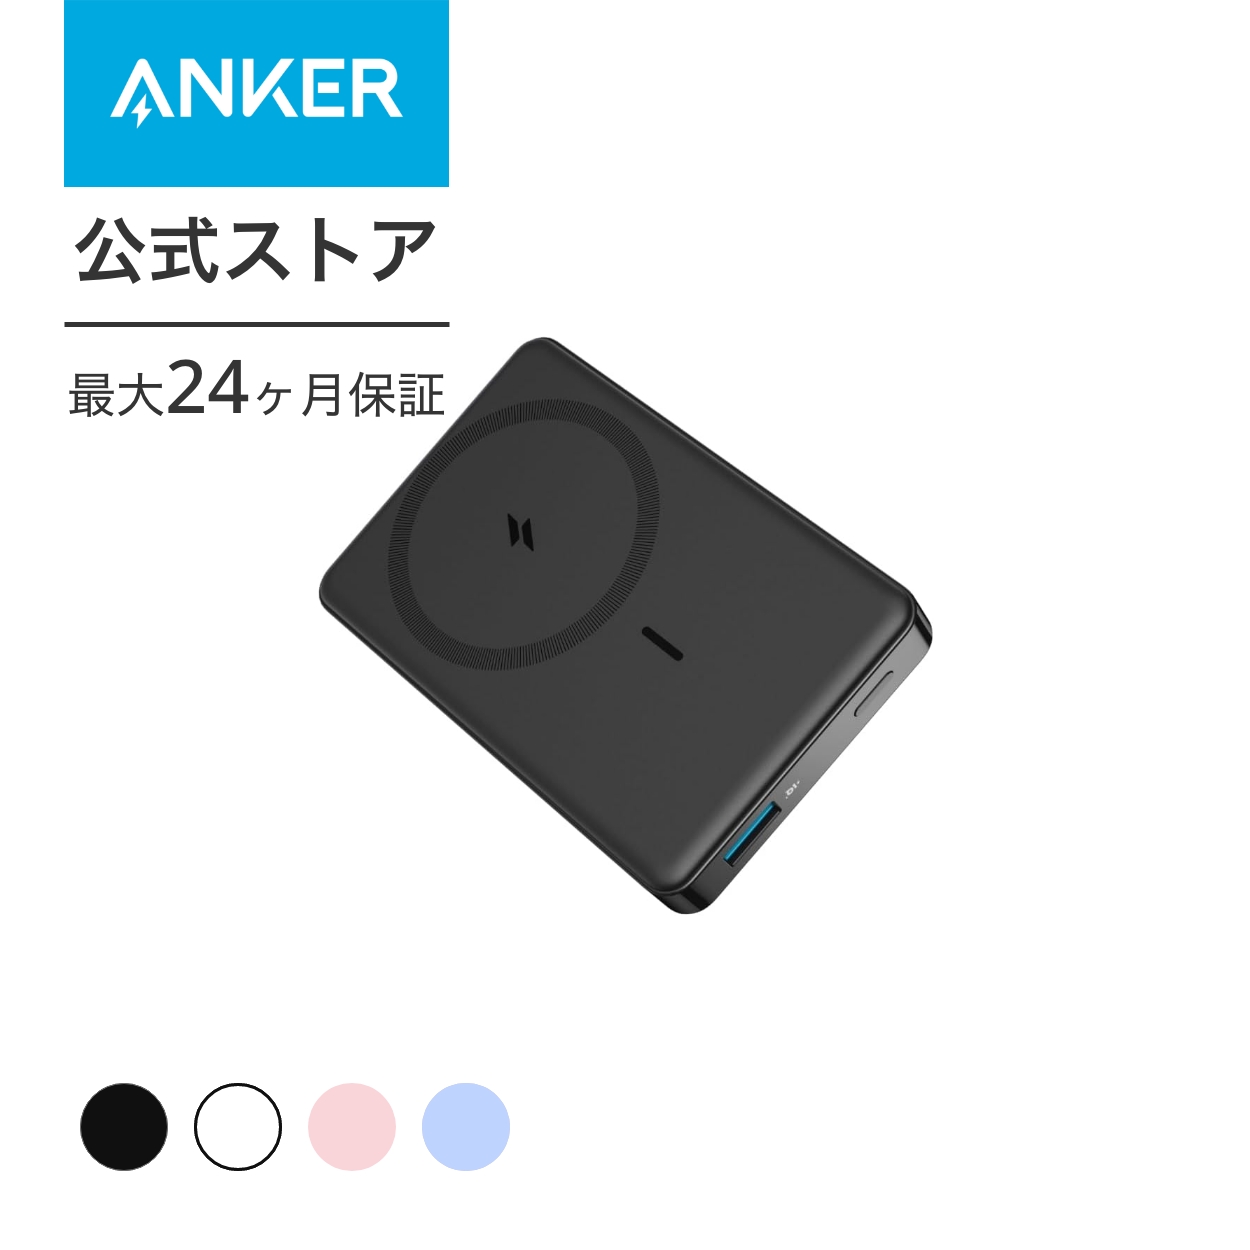 Anker 334 MagGo Battery (PowerCore 10000) (マグネット式ワイヤレス 